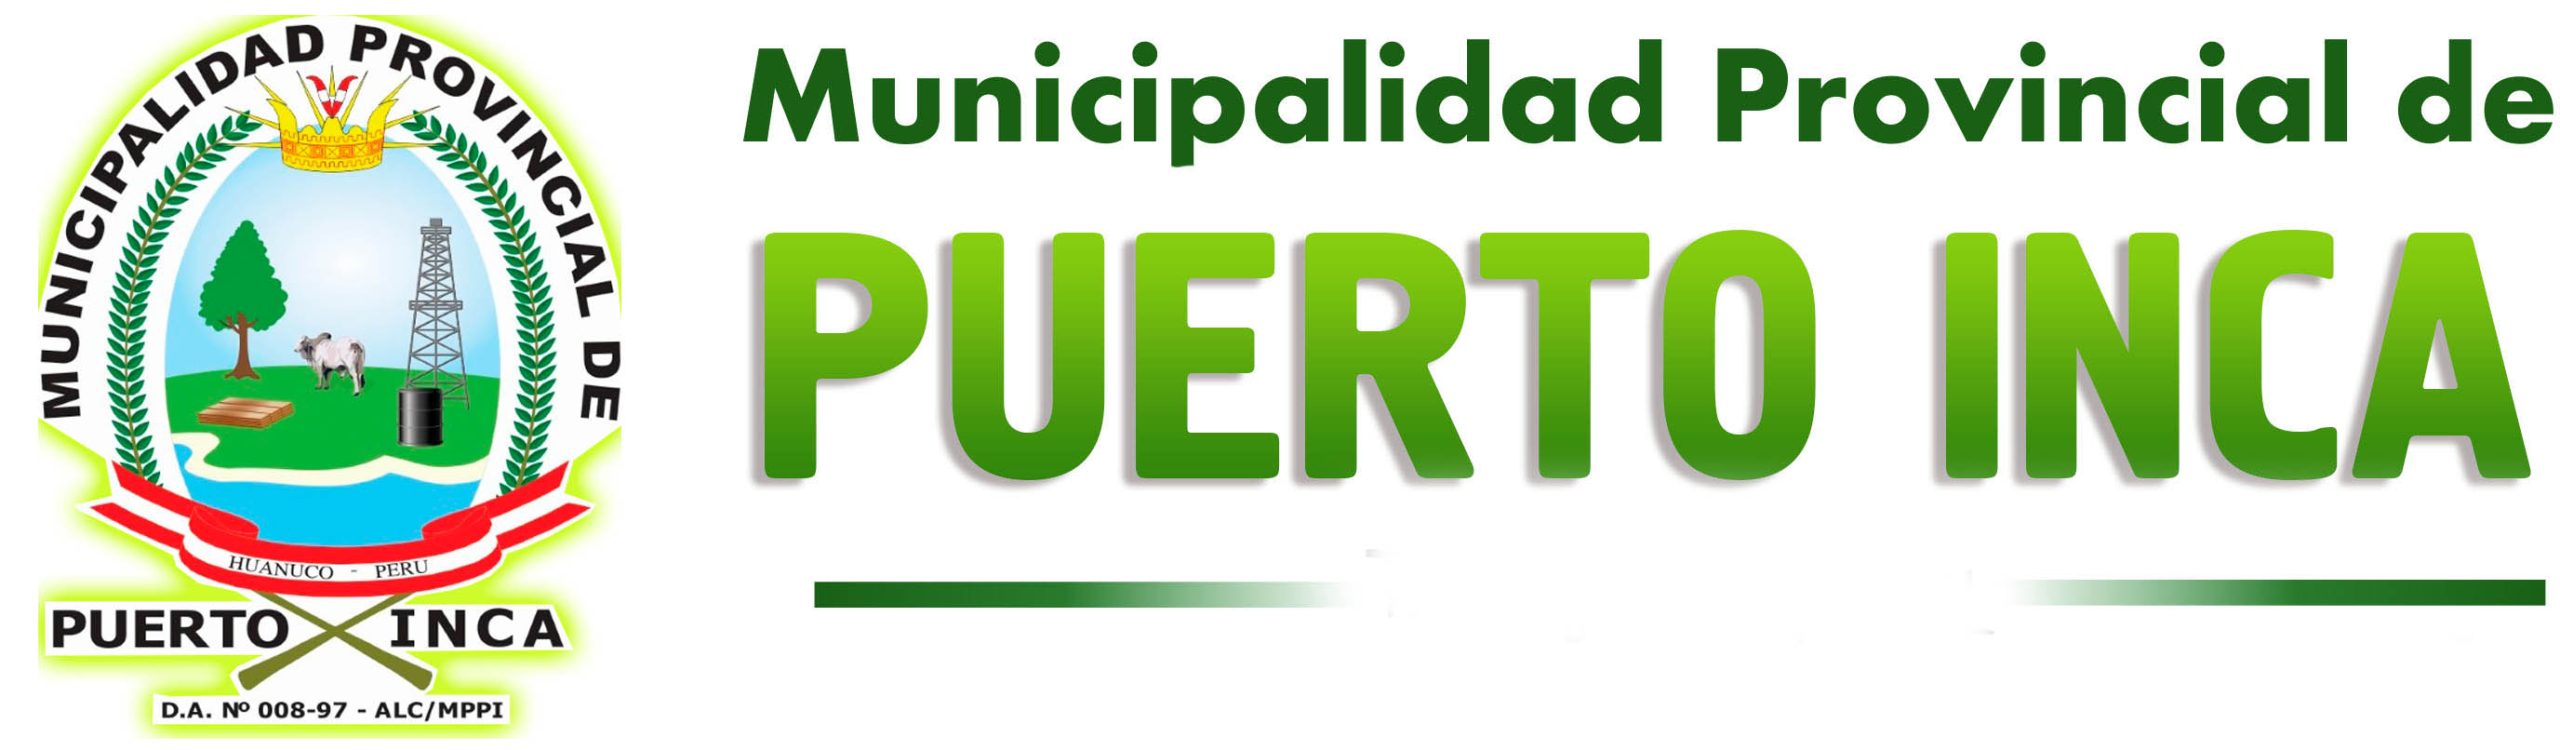 Municipalidad Provincial de Puerto Inca